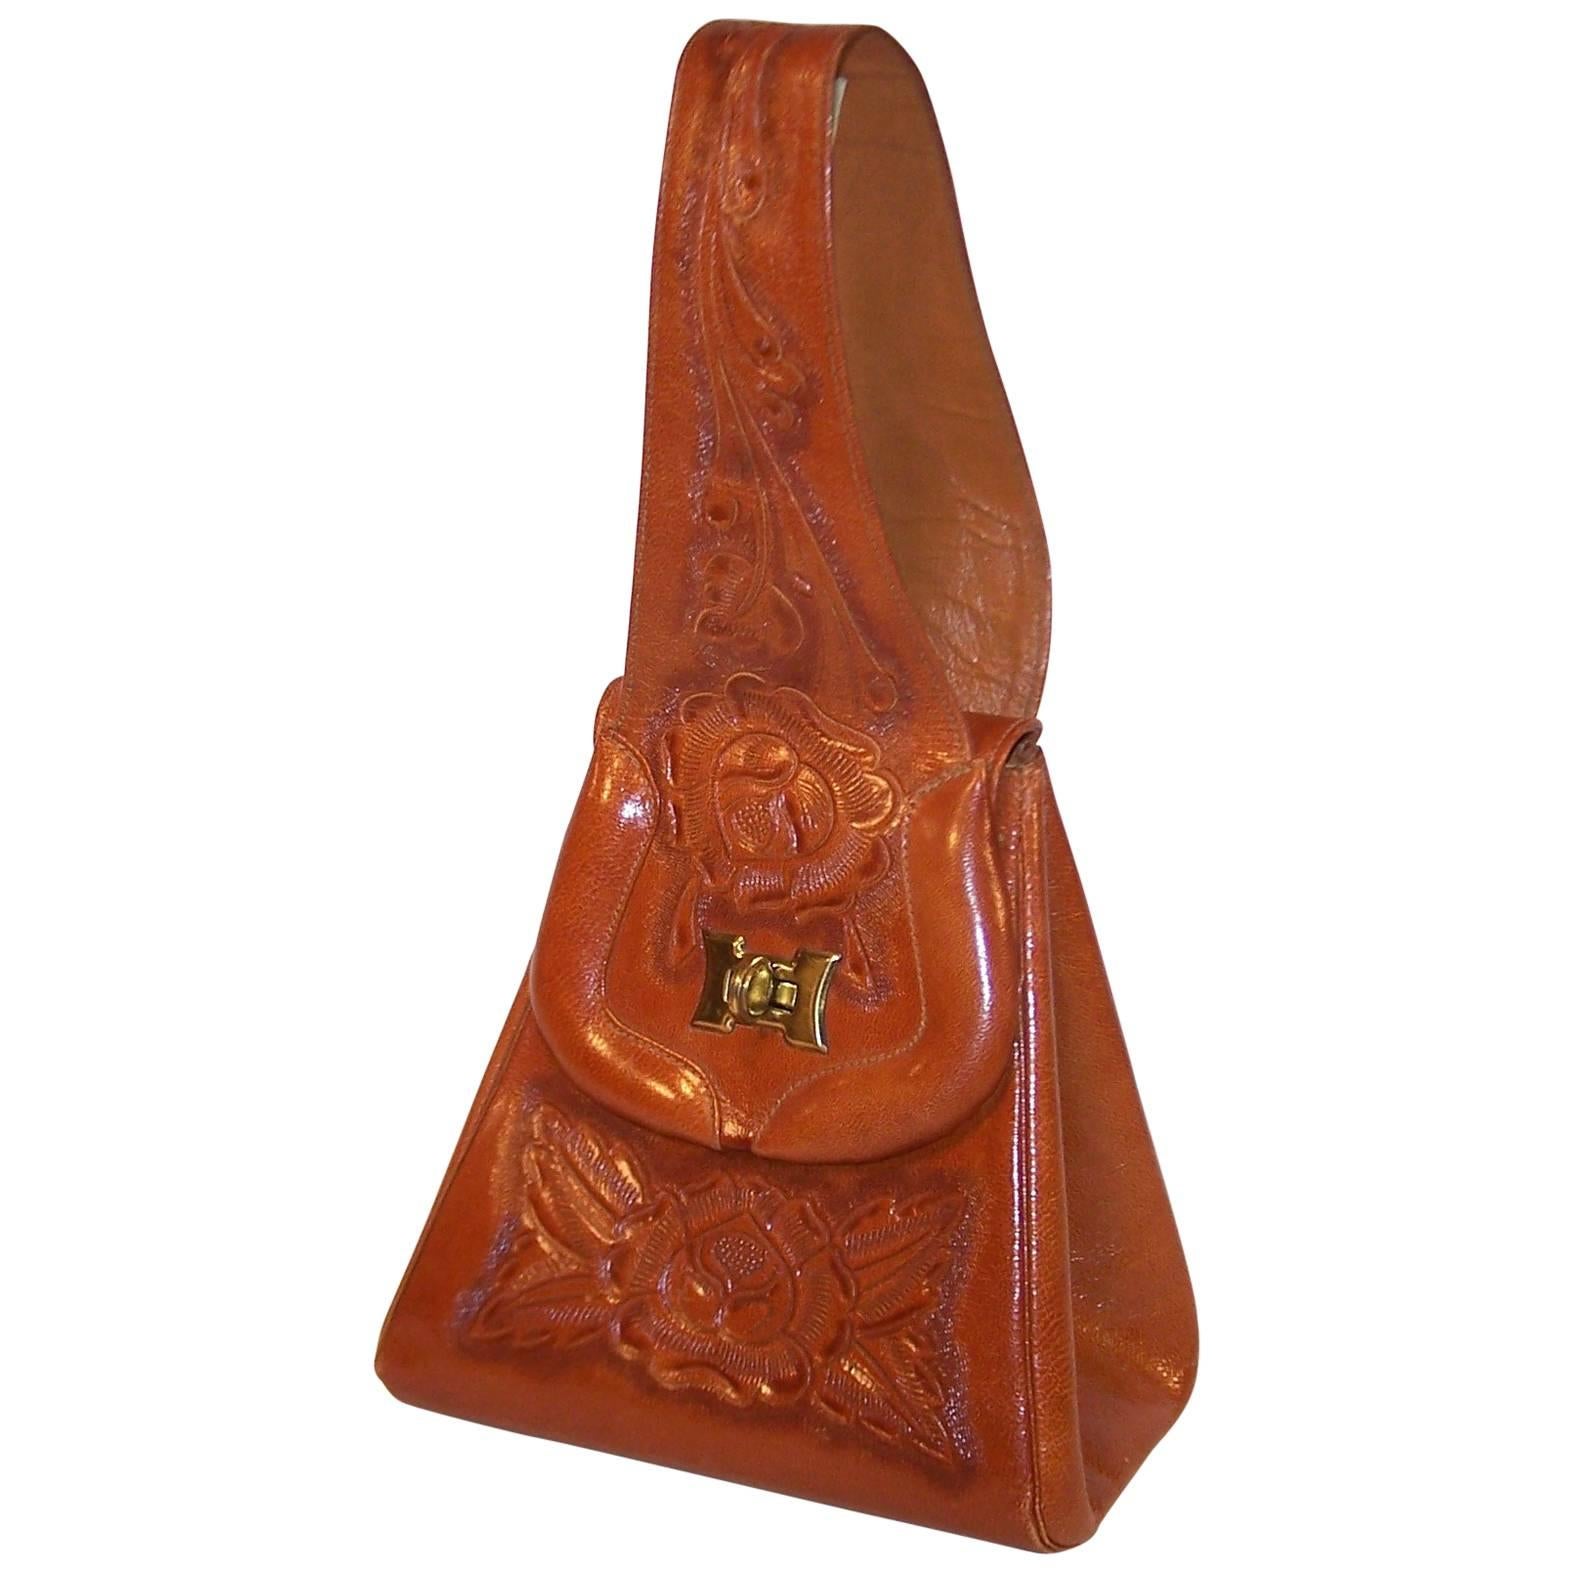 Unique 1940's Tooled Leather Saddlebag Style Handbag